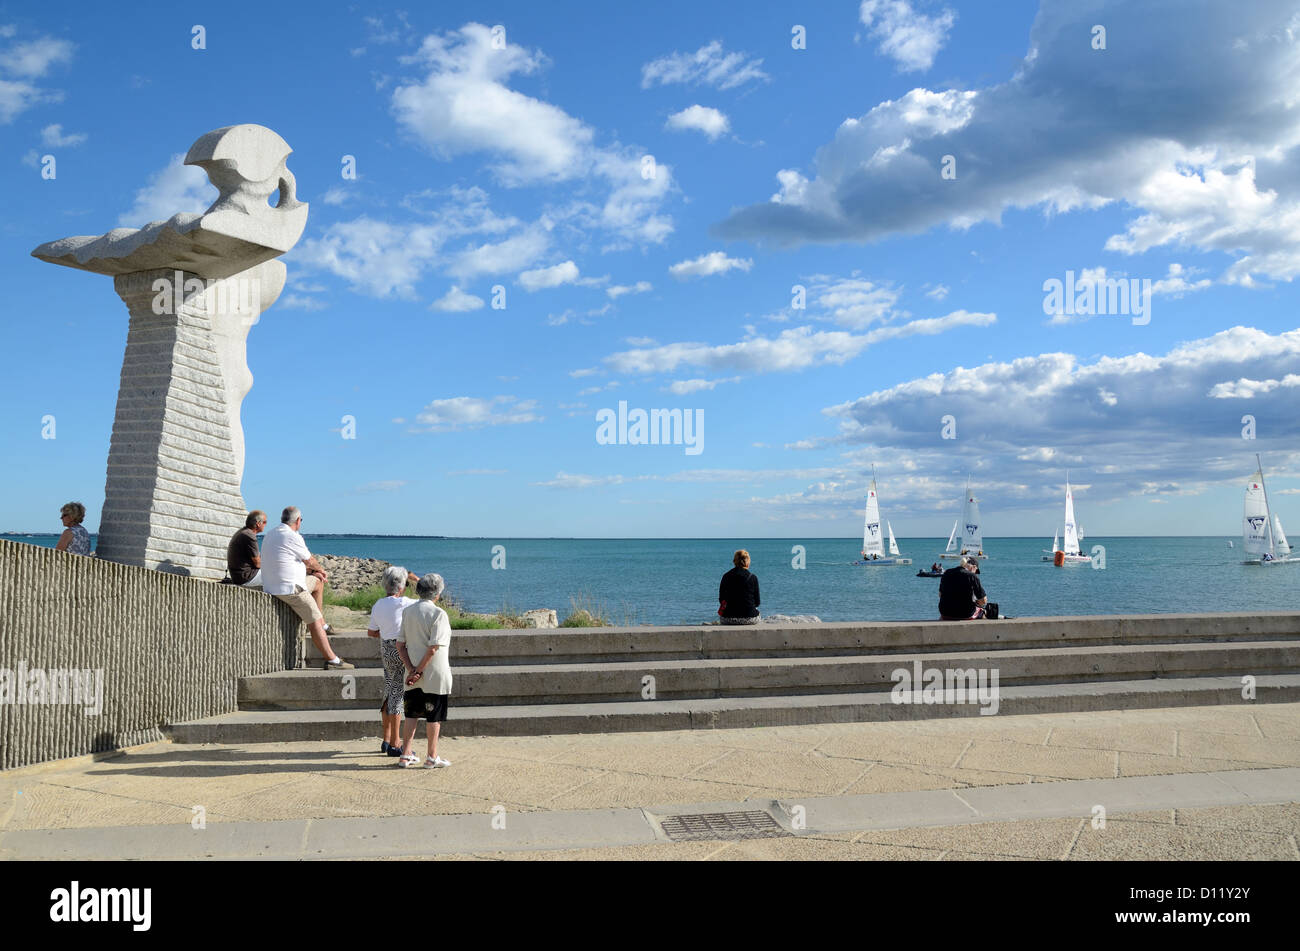 Touristes et public Sculpture sur la Promenade ou le front de mer de la station balnéaire de la Grande-Motte Hérault France Banque D'Images